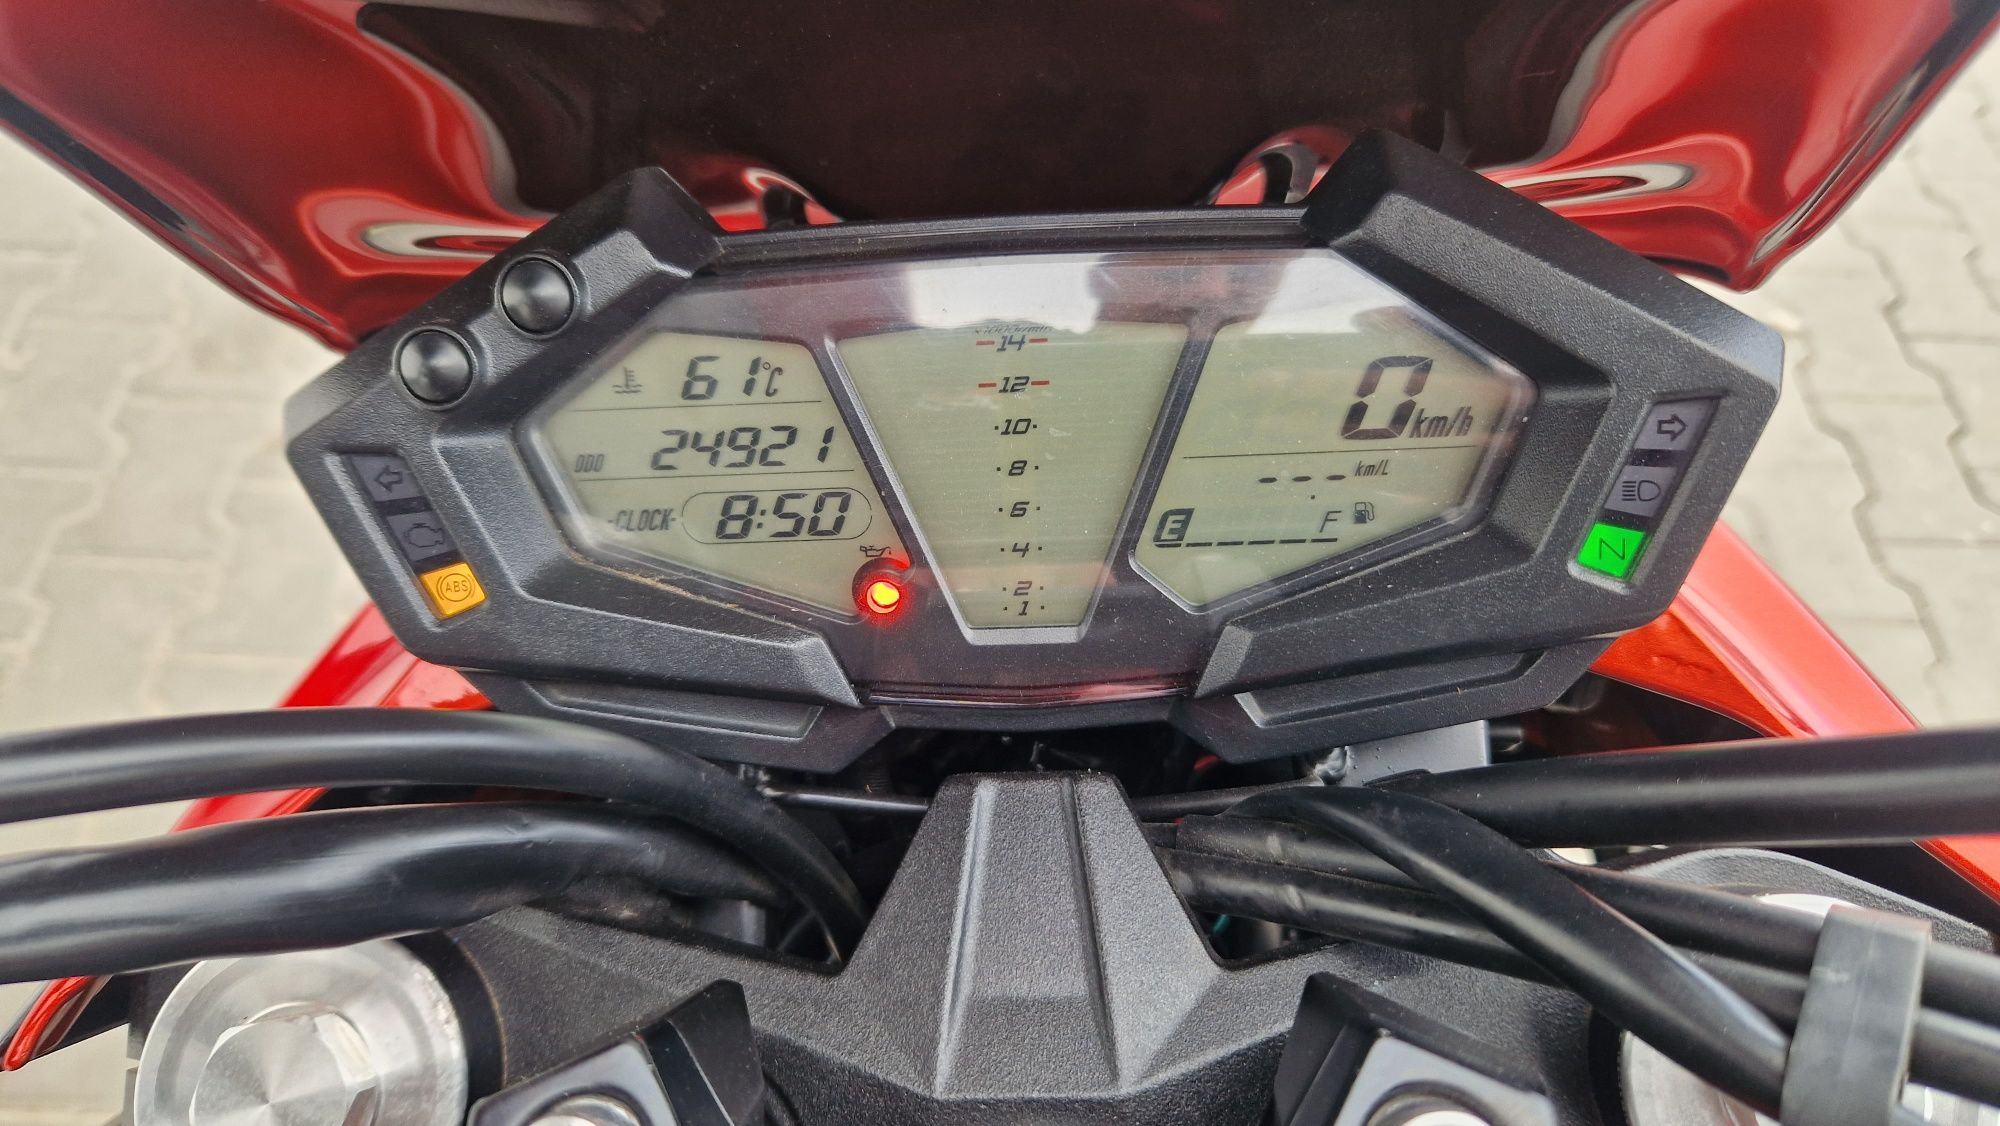 A2 Kawasaki Z800 ABS 2015 motocicleta permis 35kw naked z900